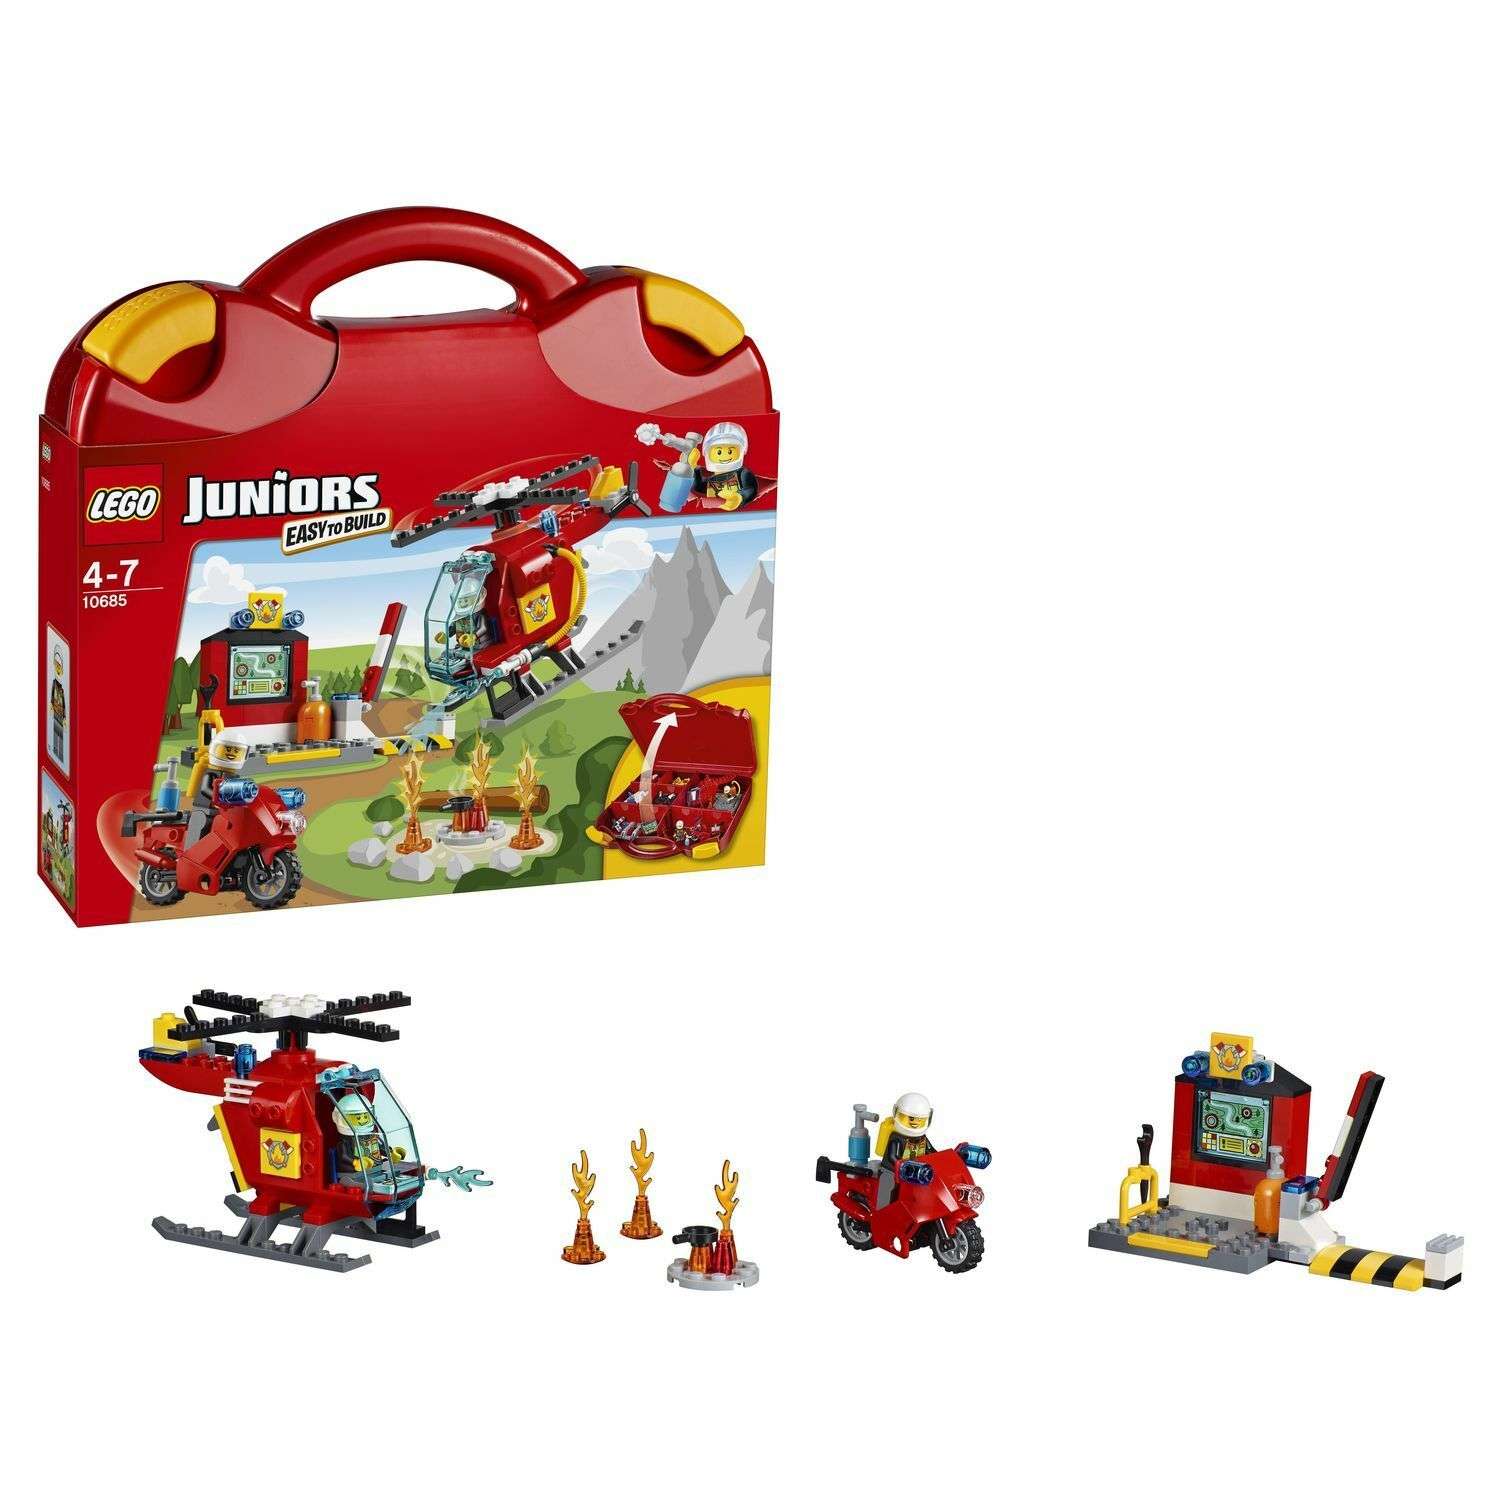 Конструктор LEGO Juniors Чемоданчик «Пожар» (10685) - фото 1